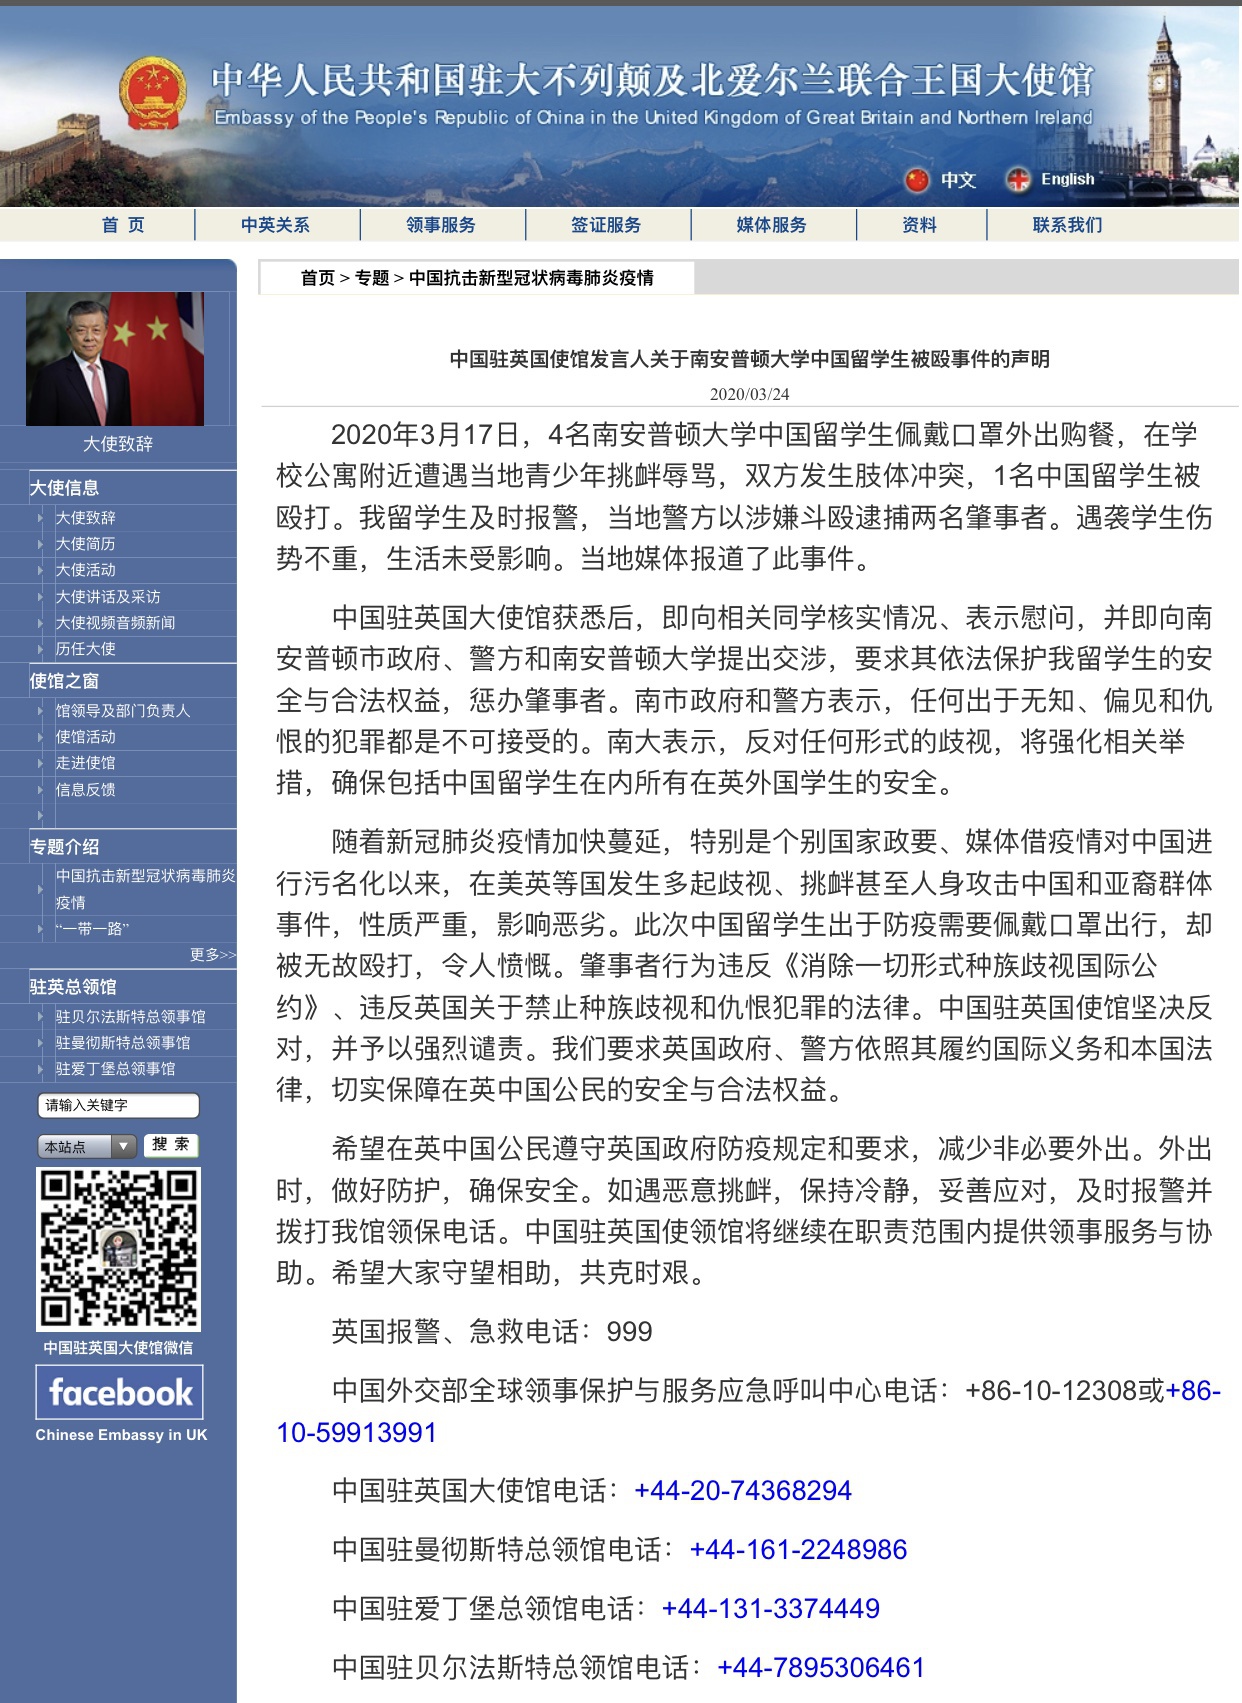  3月24日，中国驻英国大使馆发布此事件通告。网页截图